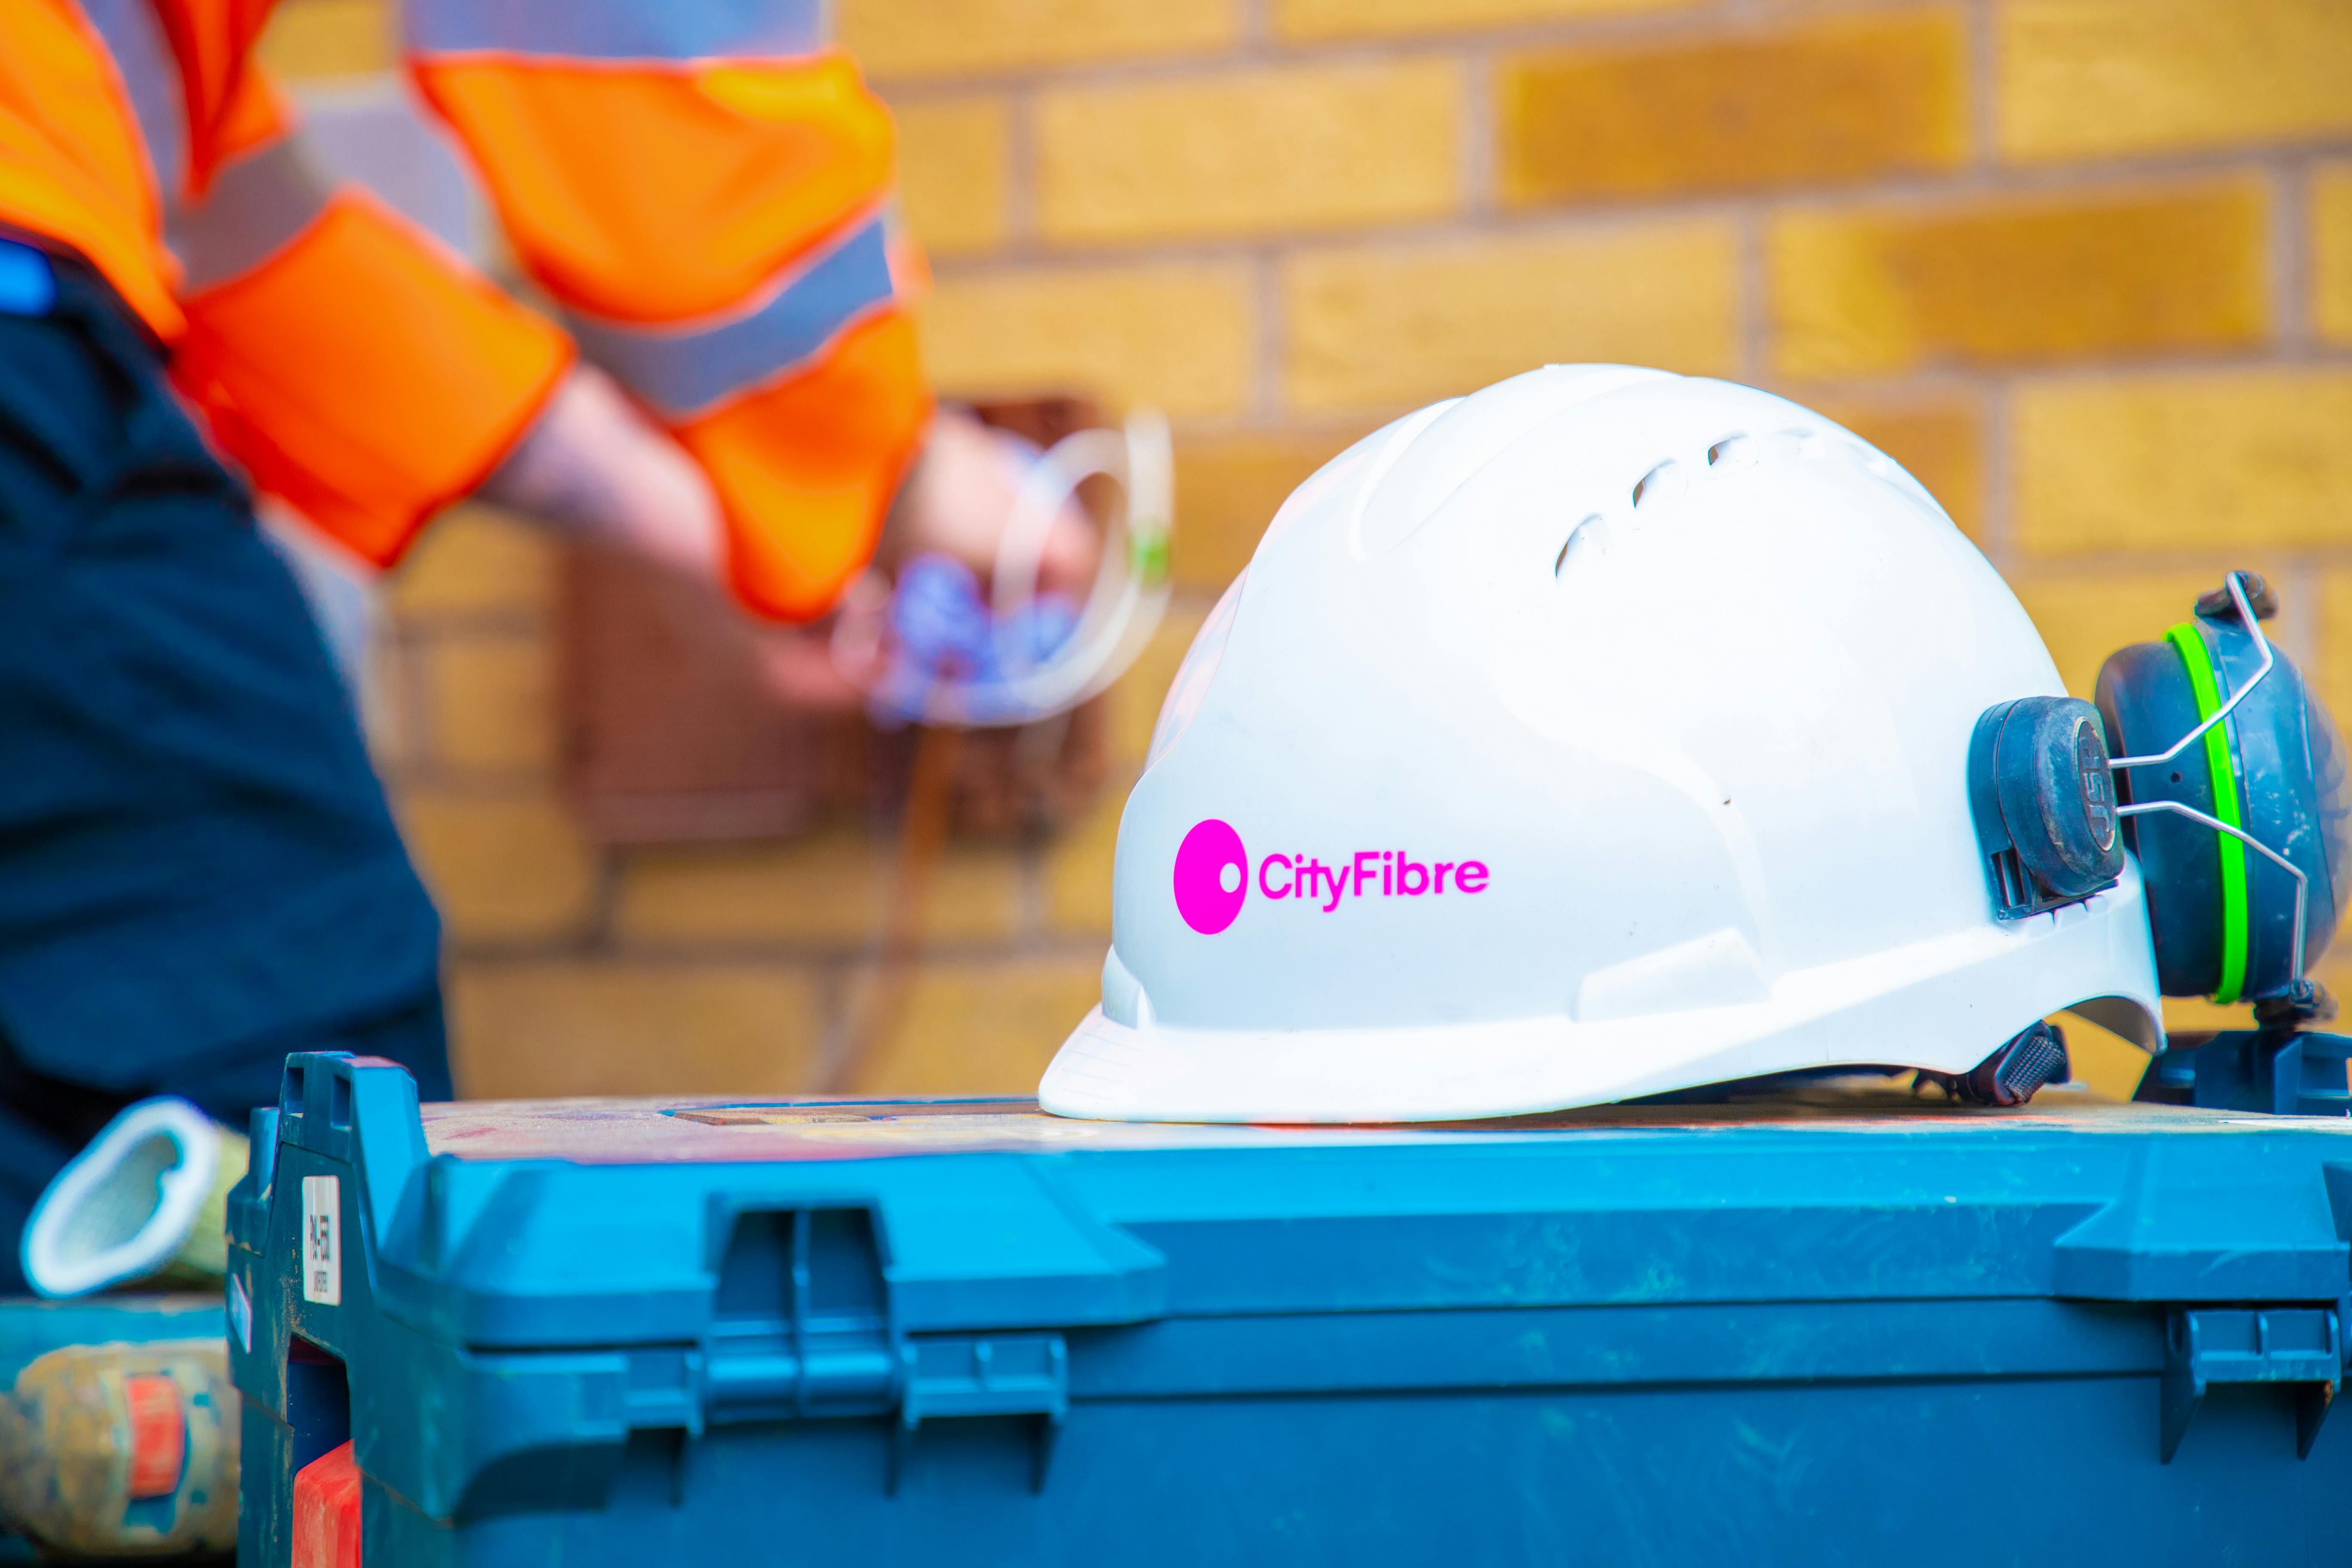 Fibre optic engineer's helmet with CityFibre logo